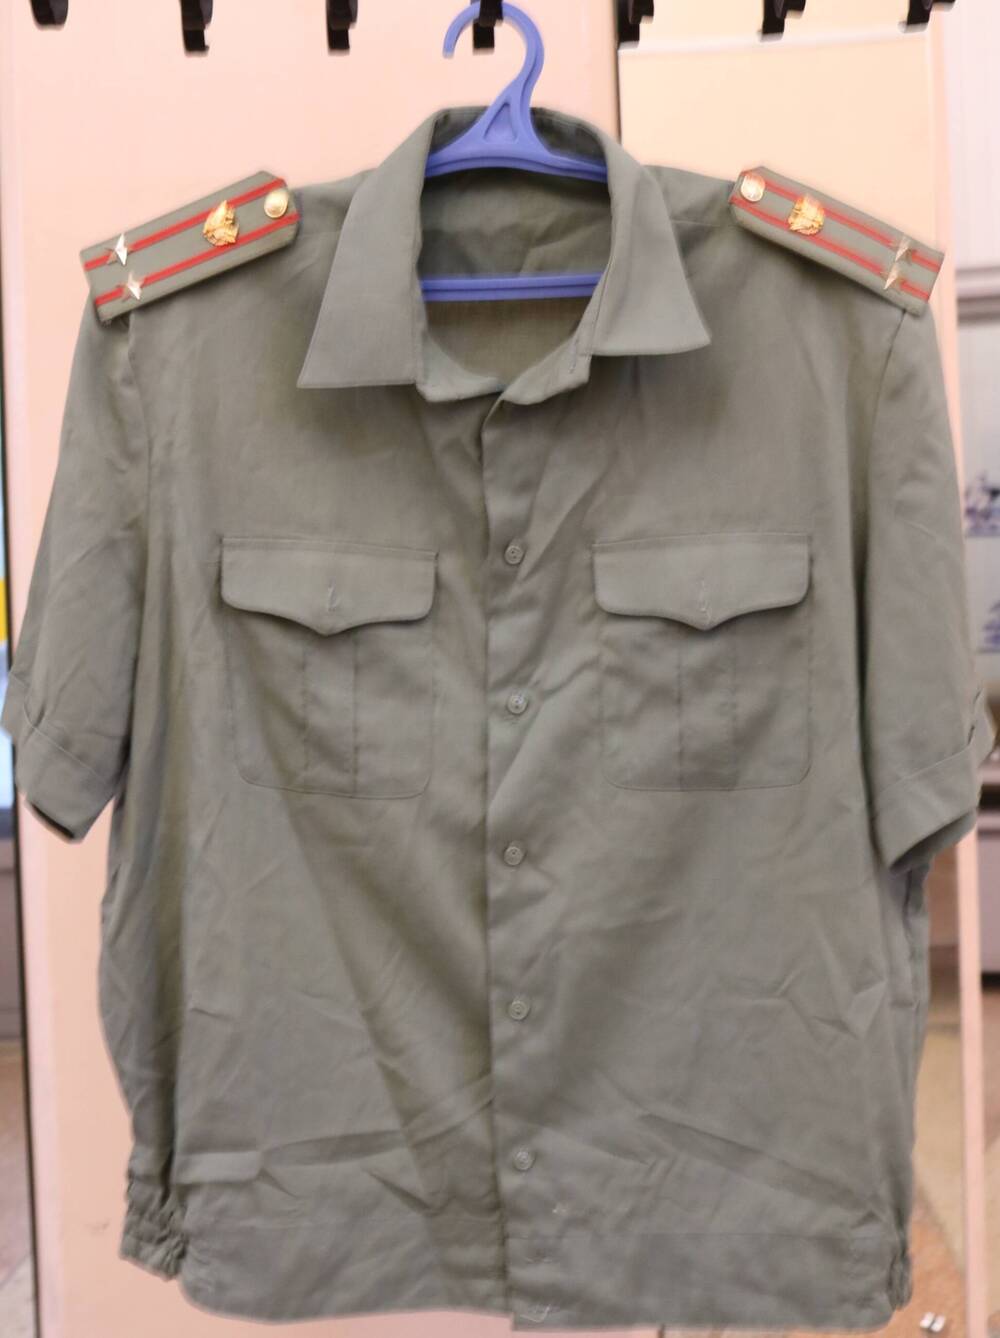 Рубашка форменная (летная) подполковника войск ПВО Российской армии с эмблемами рода войск